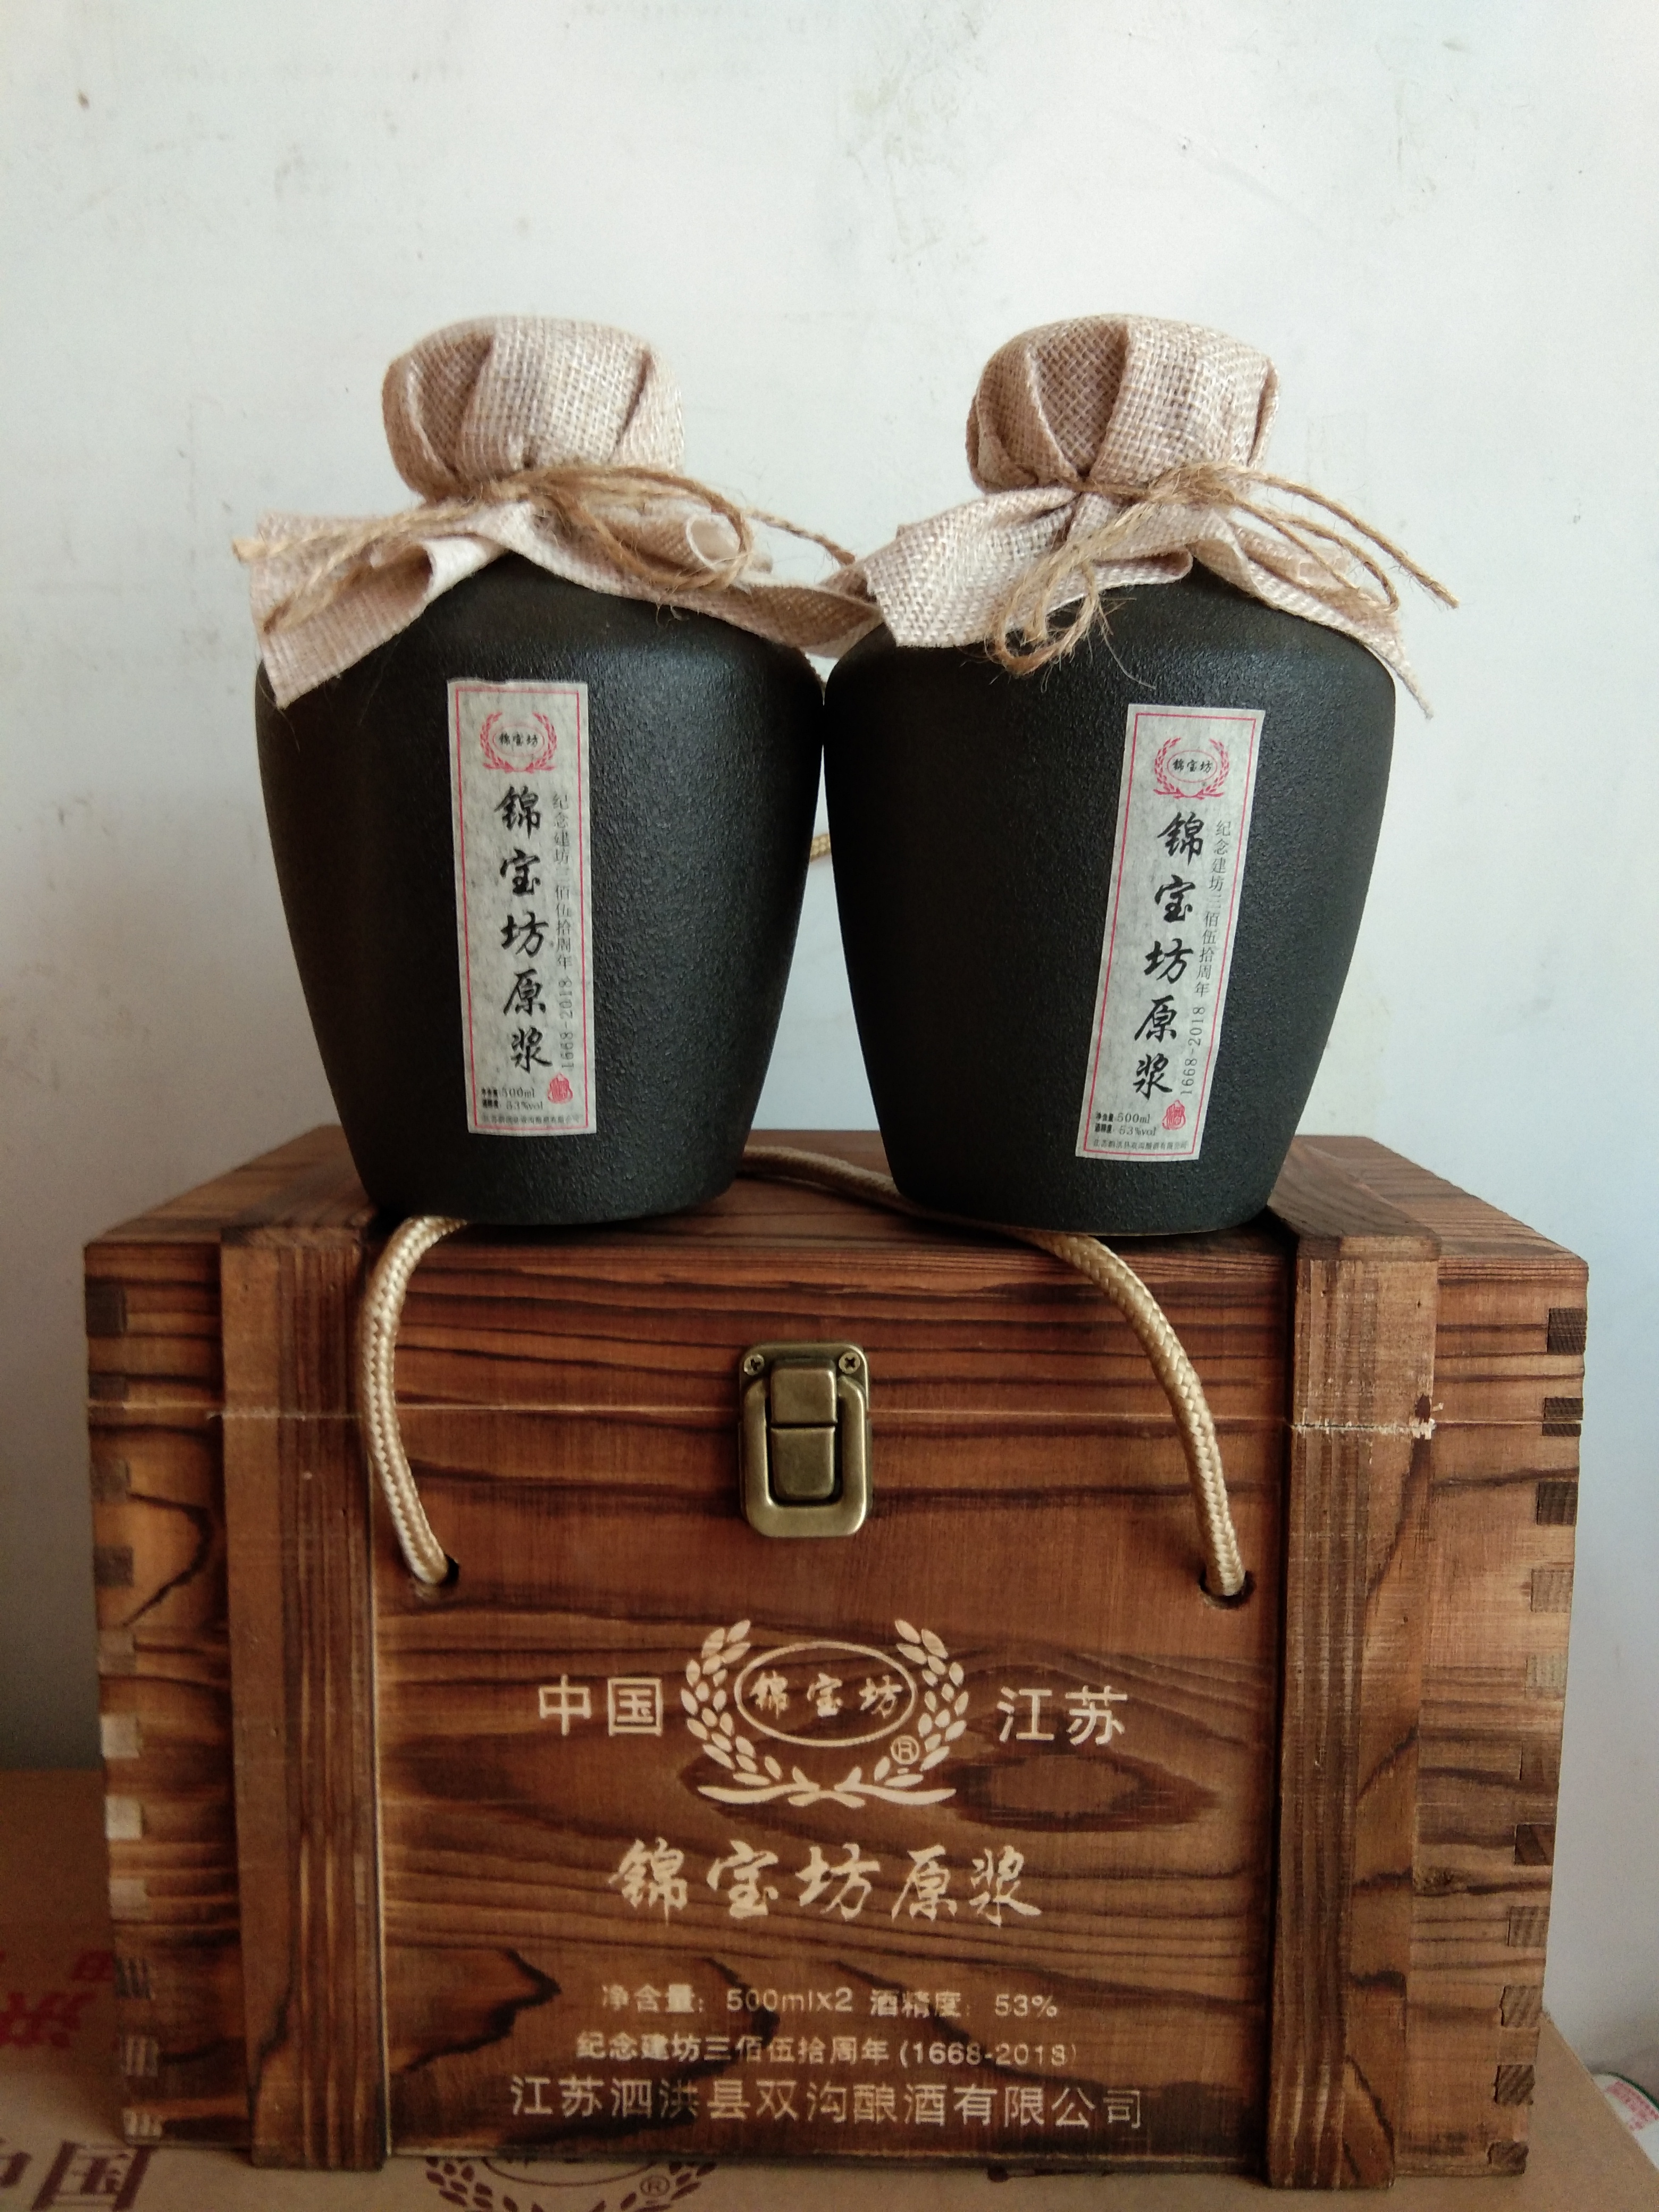 江苏双沟酿酒有限公司锦宝坊建坊纪念酒诚招各县市代理商，电话159619658。锦